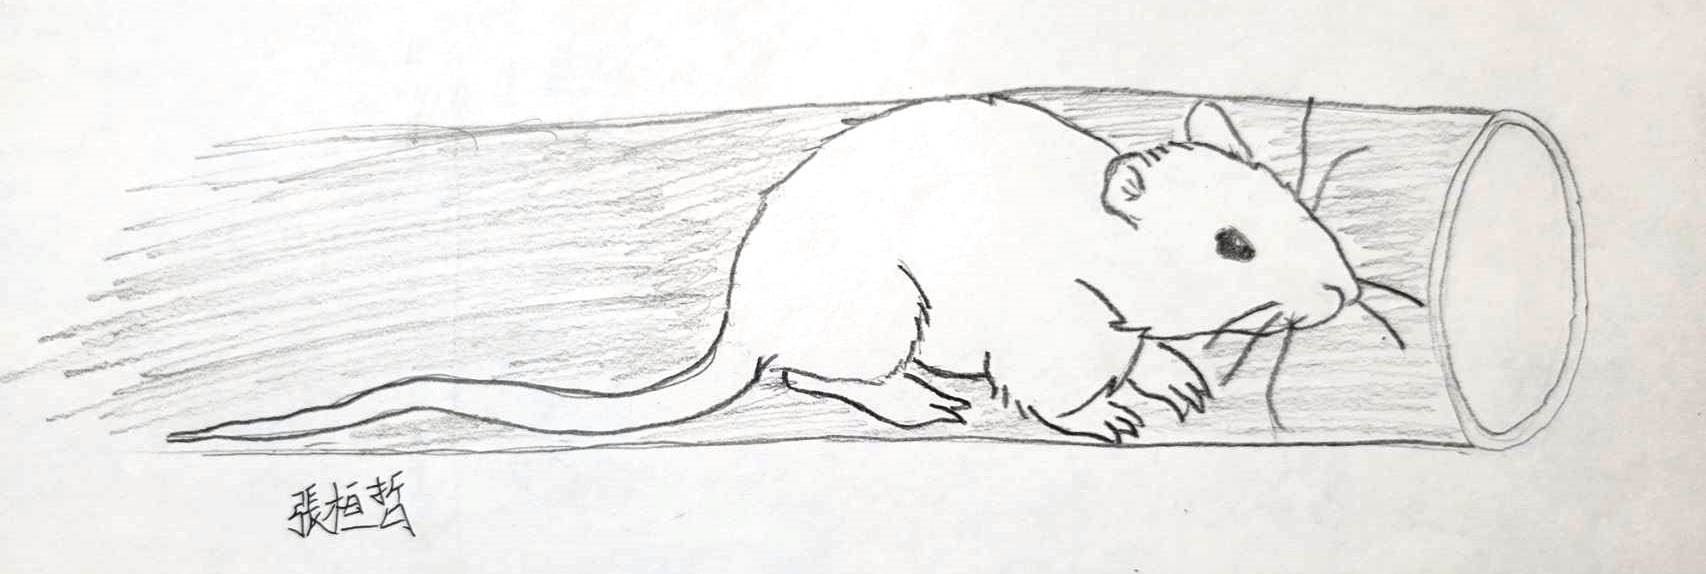 圖2、老鼠經常會爬進投餌機管內偷食飼料，有時候會因攝食過量無法爬出，阻塞飼料噴出通道，造成投餌機馬達空轉，無法順利噴料（南大附中張桓哲繪製）